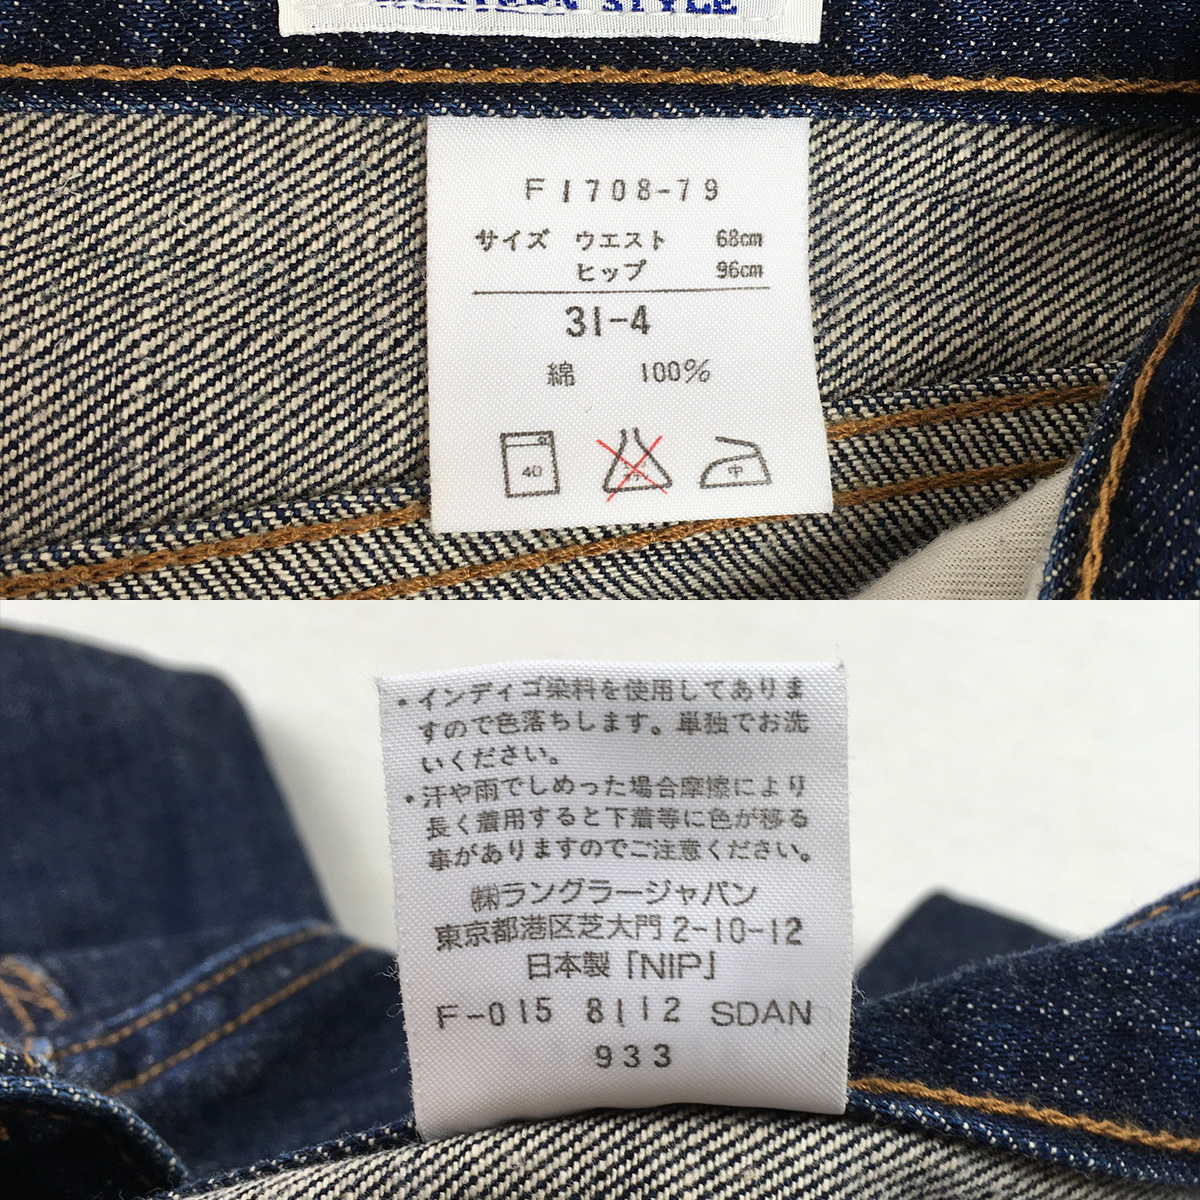 Wrangler Wrangler F1708-79 сделано в Японии широкий распорка Denim брюки джинсы размер 31-4 Zip fly cell bichi кожа patch 